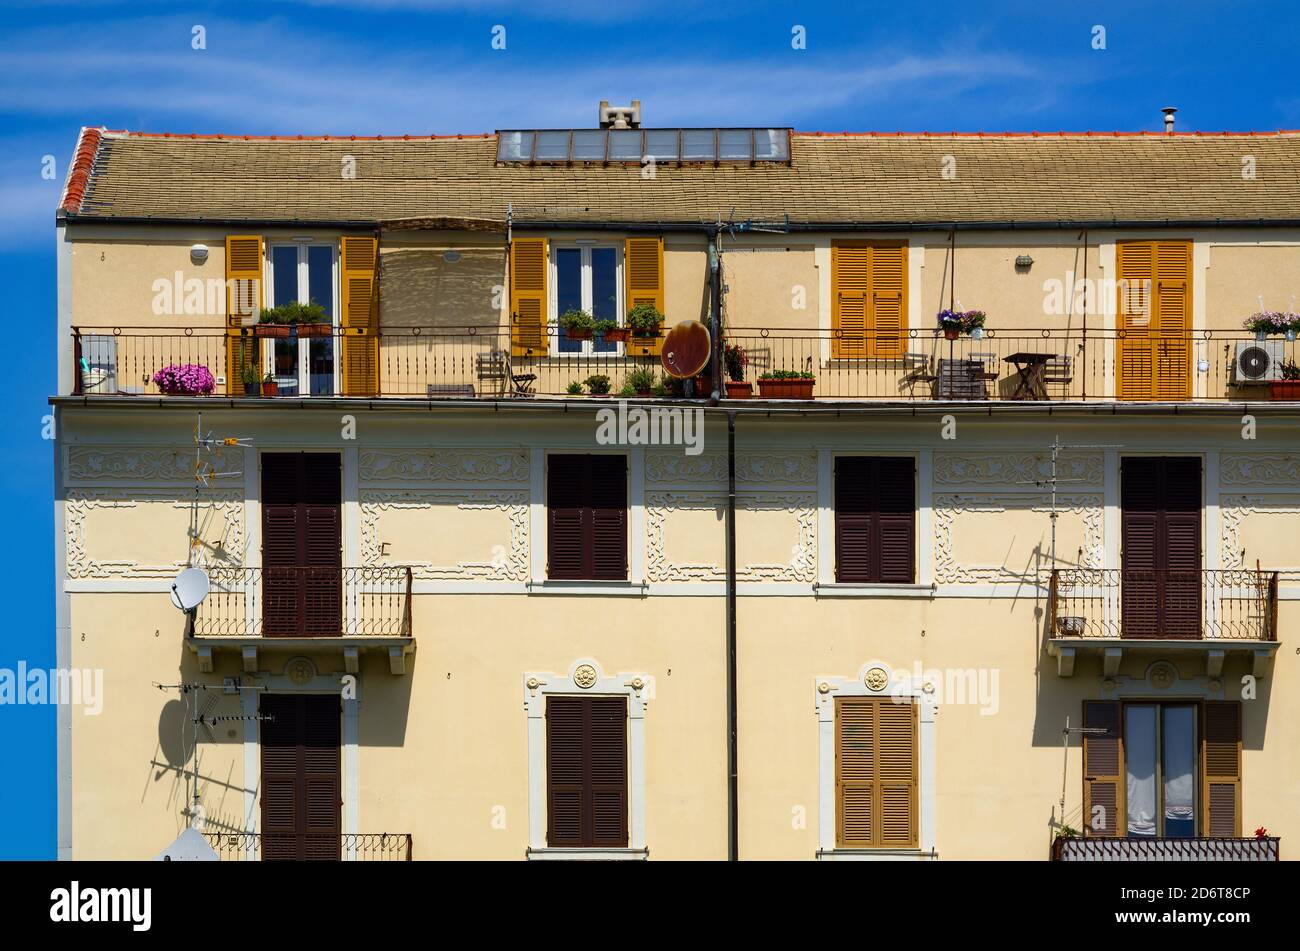 Façade d'un immeuble à Savona, Italie. Bâtiment jaune avec rangées de fenêtres et balcons. Banque D'Images